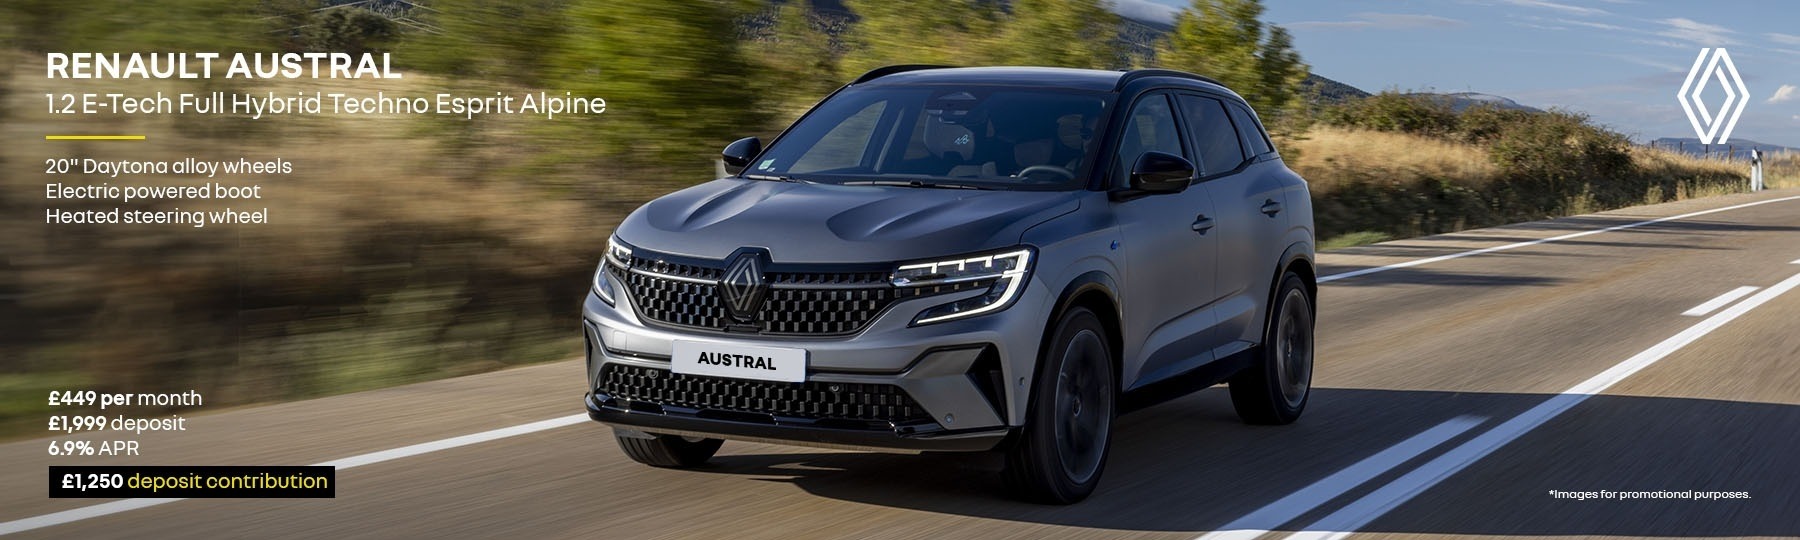 Renault Austral E-Tech full hybrid New Car Offer